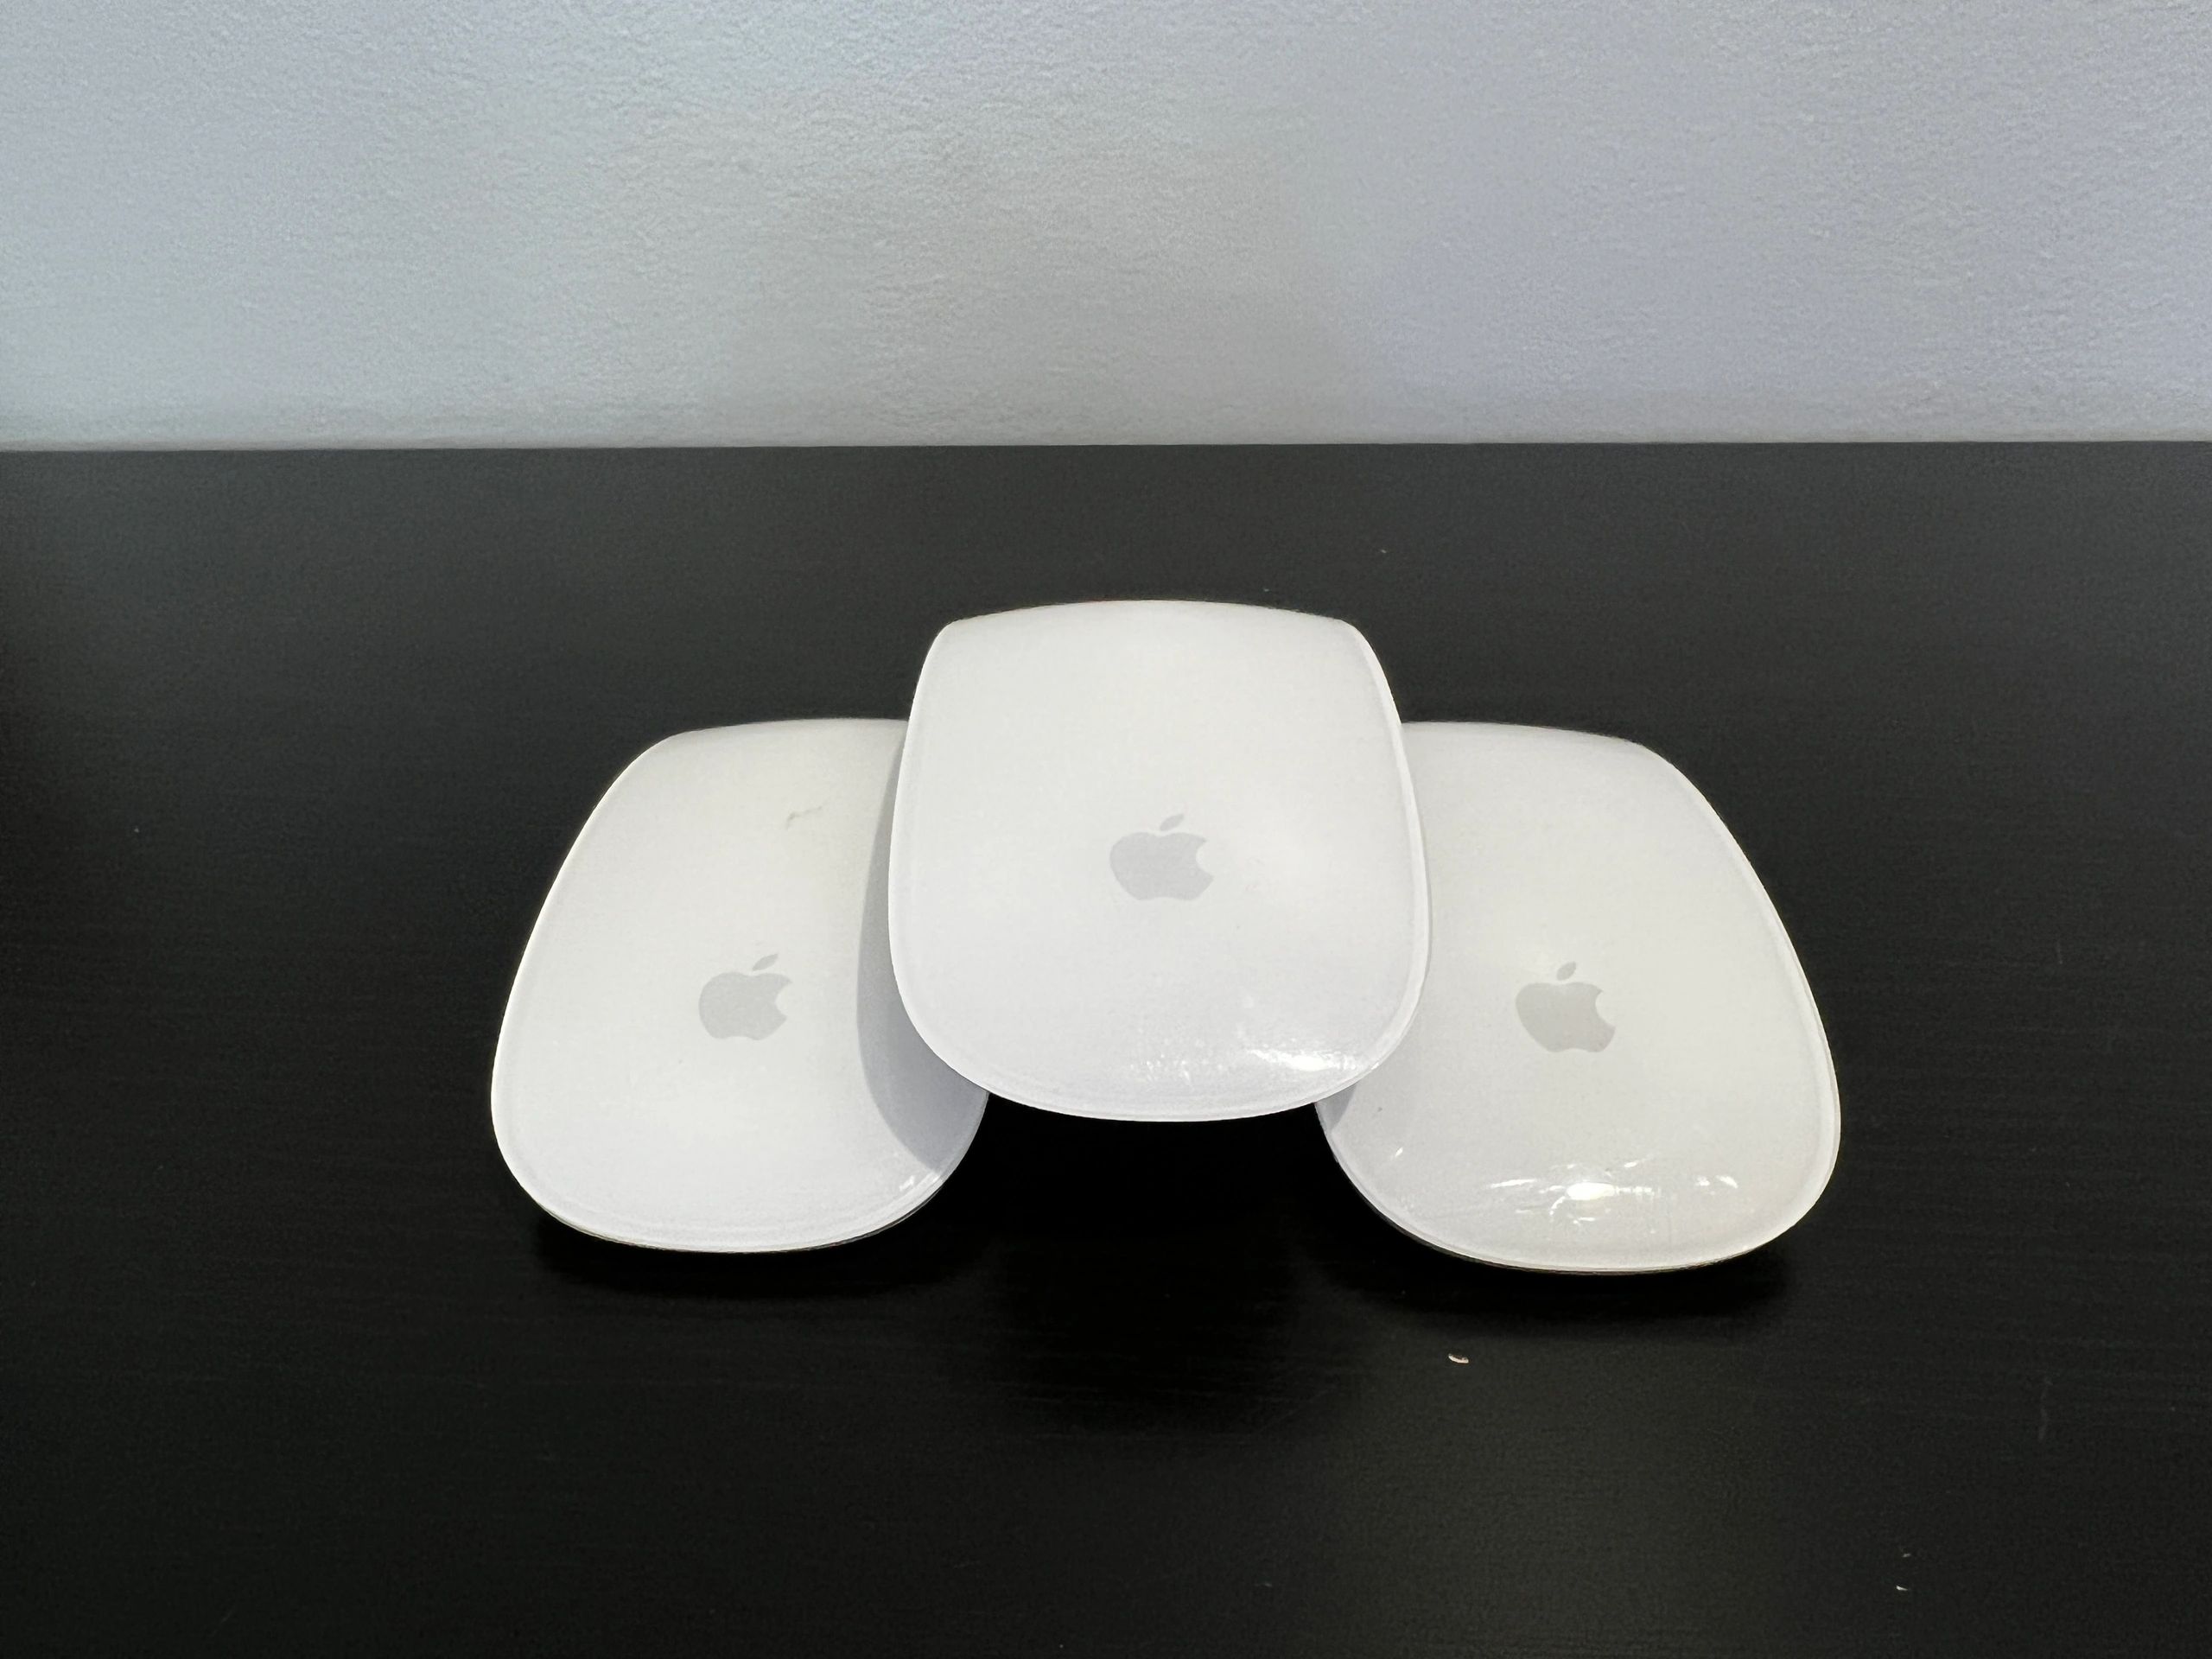 AppleMac4Less